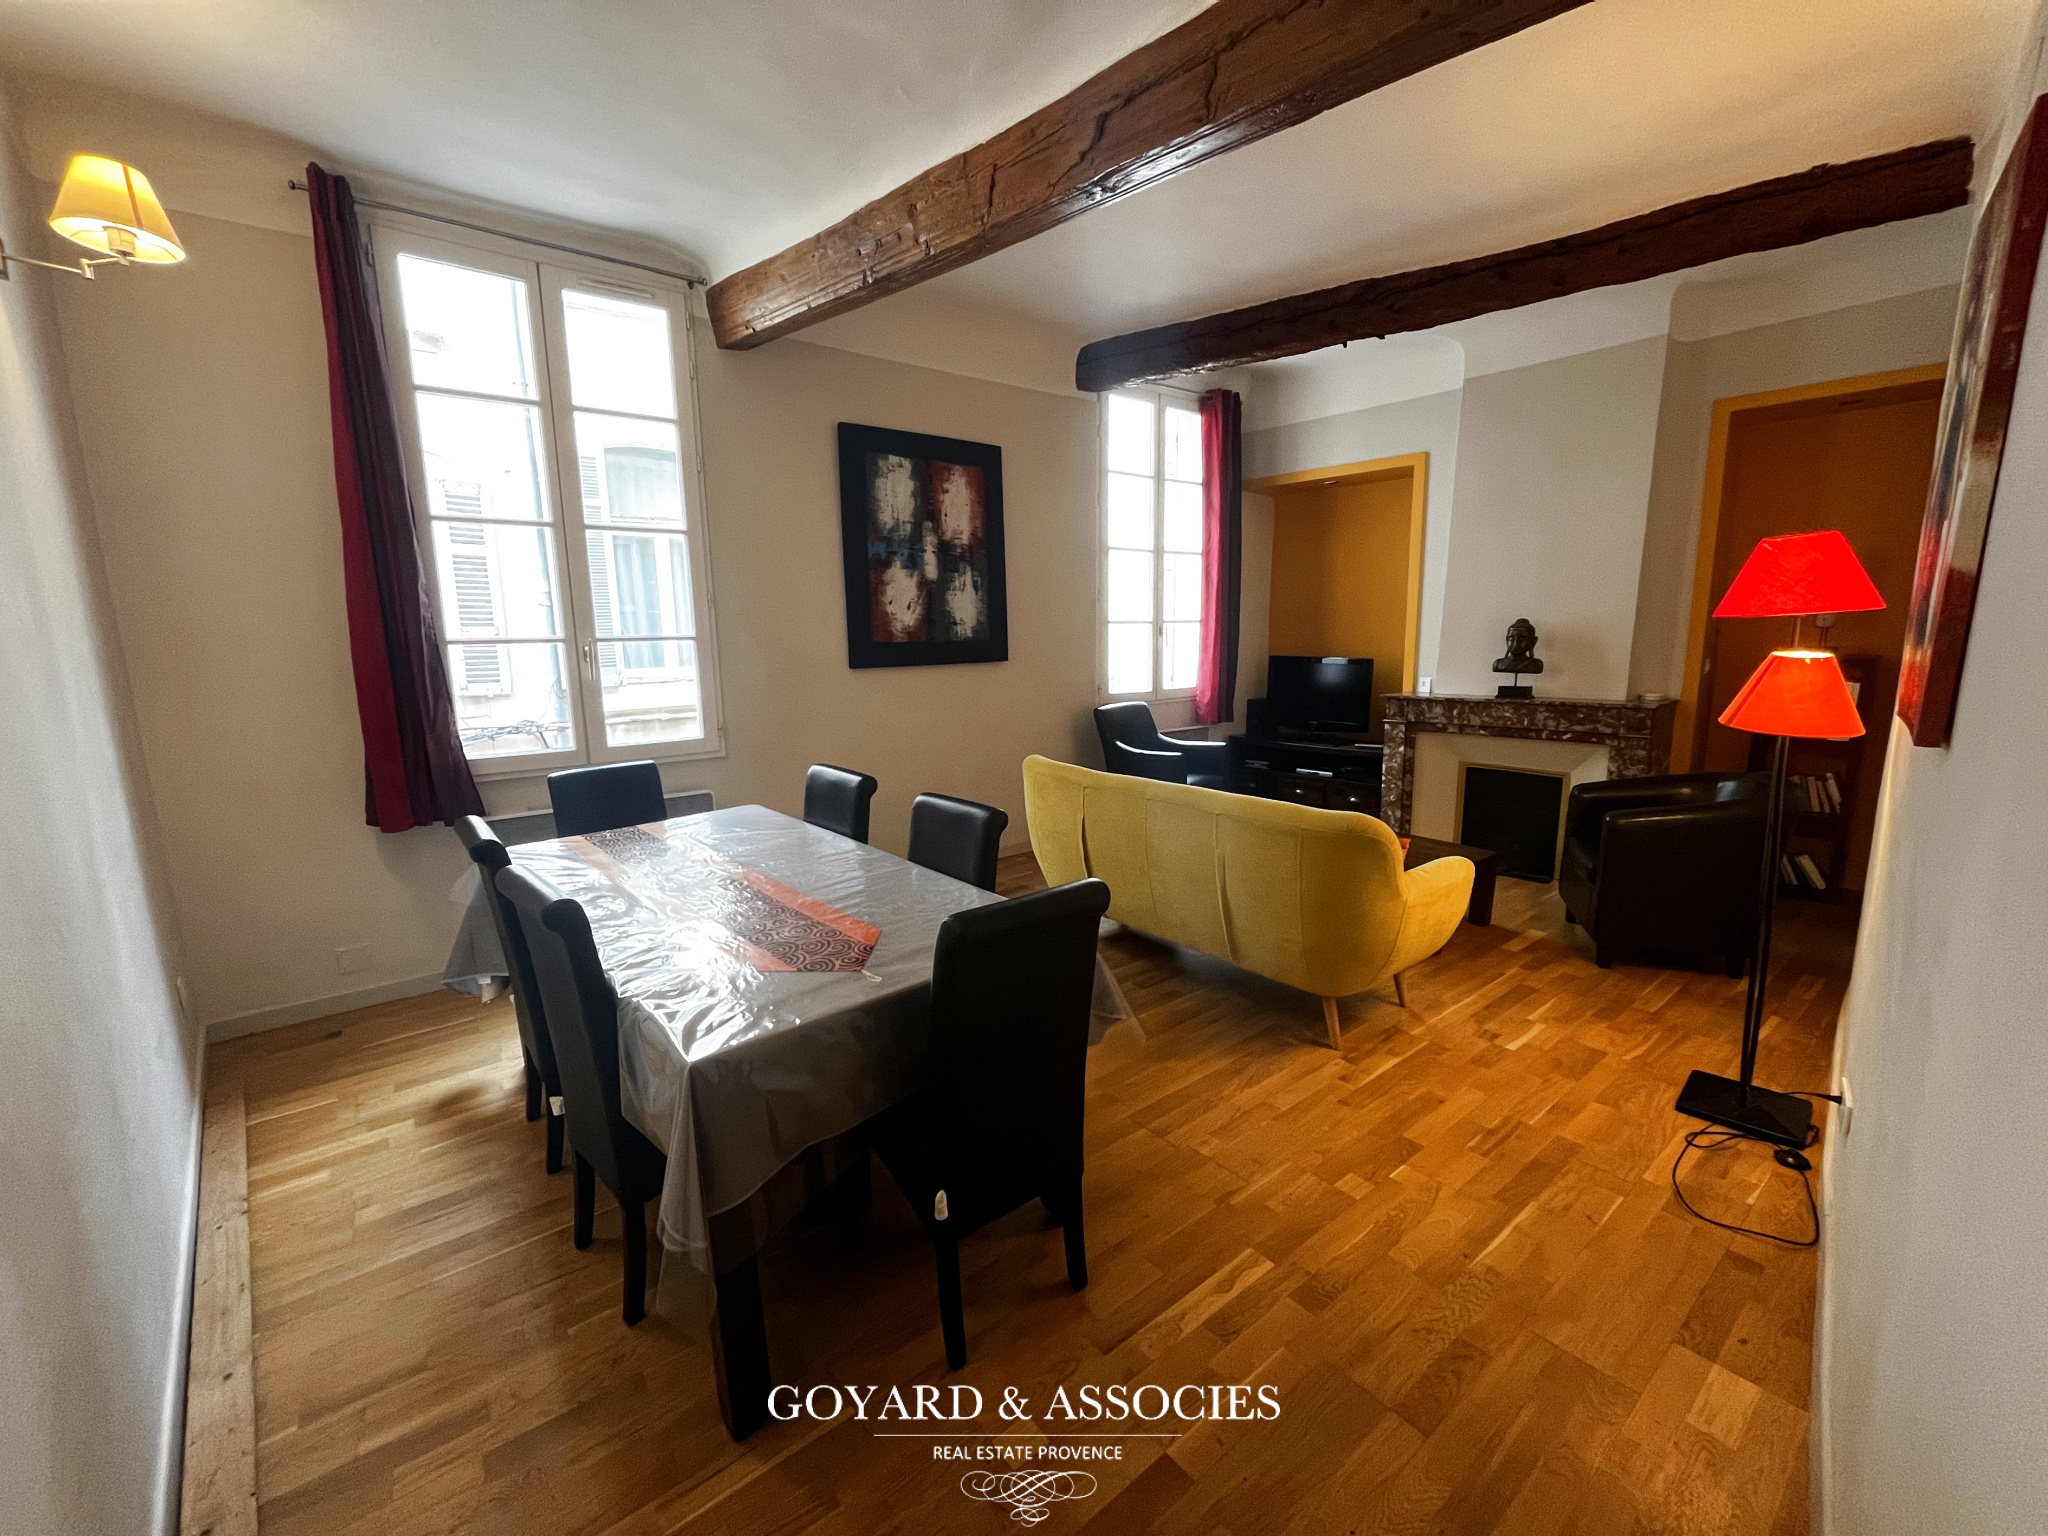 Agence immobilière de Goyard & Associes - Aix Montigny